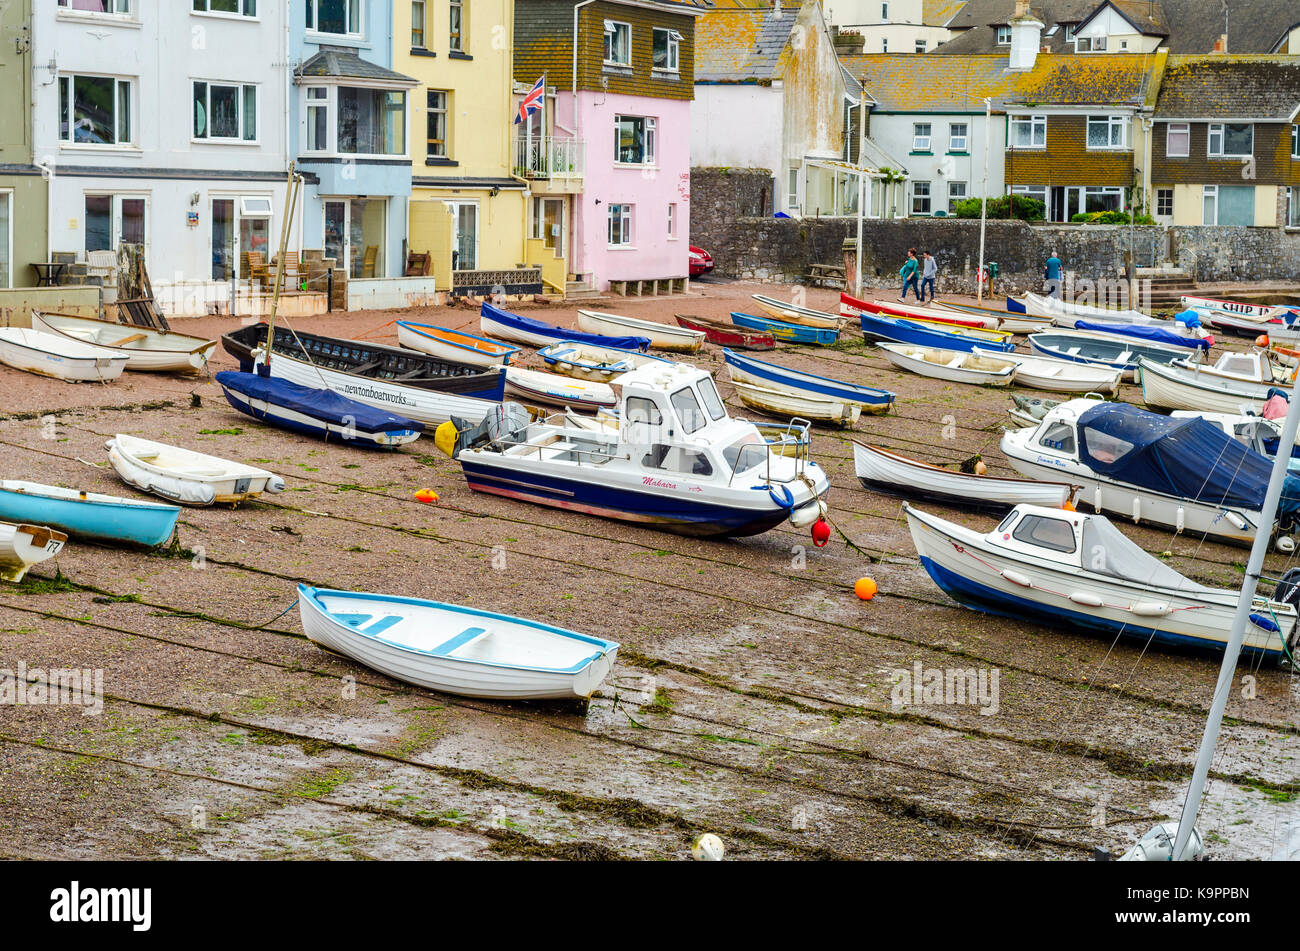 Bateaux amarrés sur une plage à Teignmouth, Devon, England, UK Banque D'Images